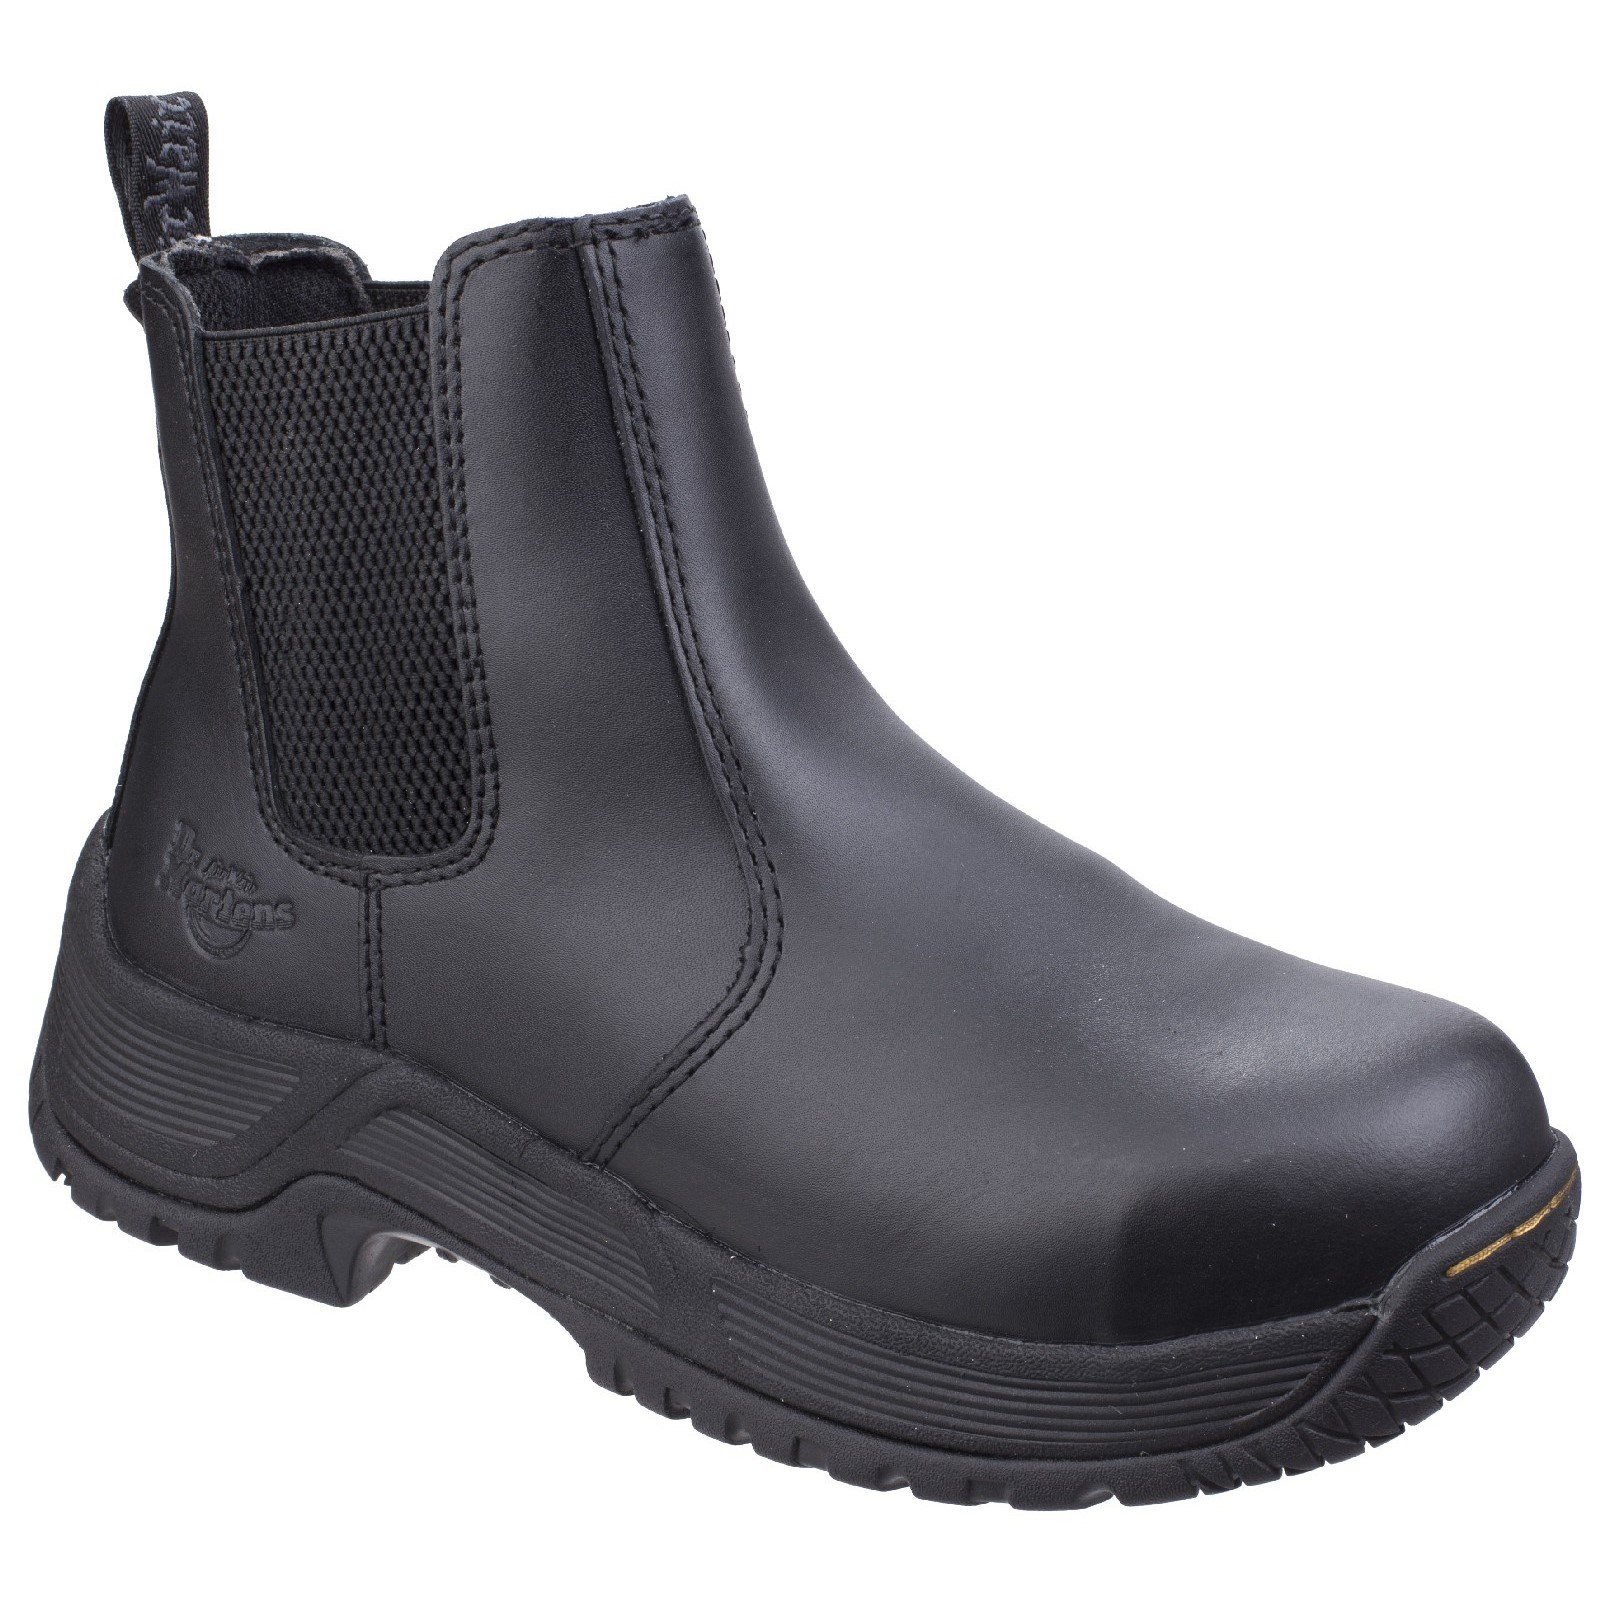 Dr Martens Men's Drakelow Safety Boot Black 26021 - Black 6